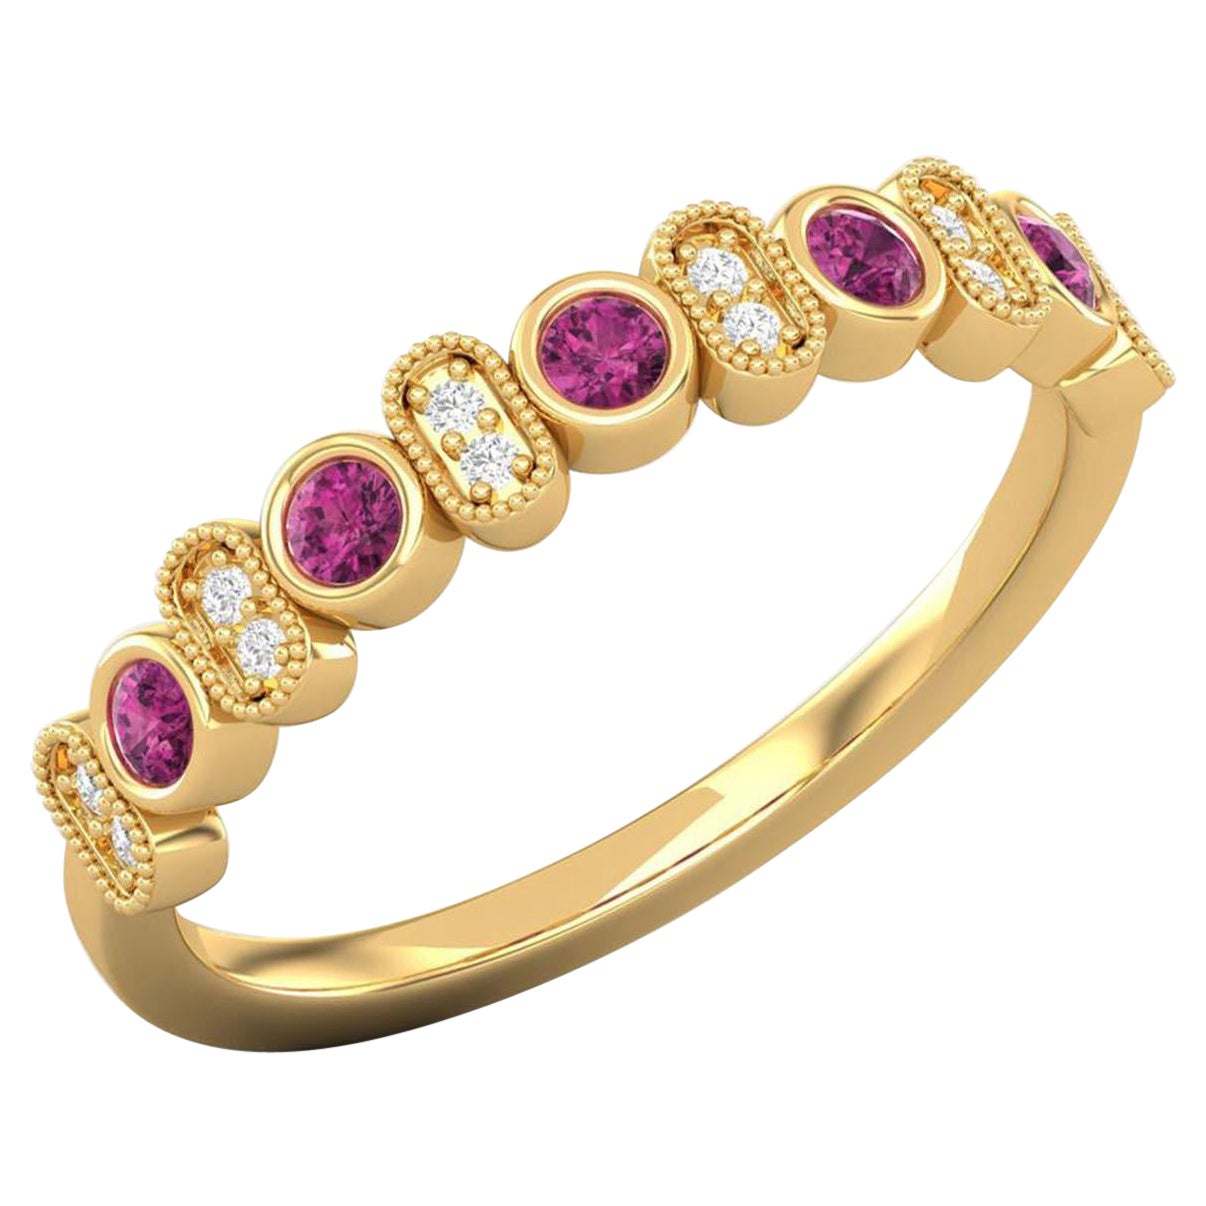 14 K Gold Diamond Ring / Rubellite Tourmaline Ring / Cluster Band